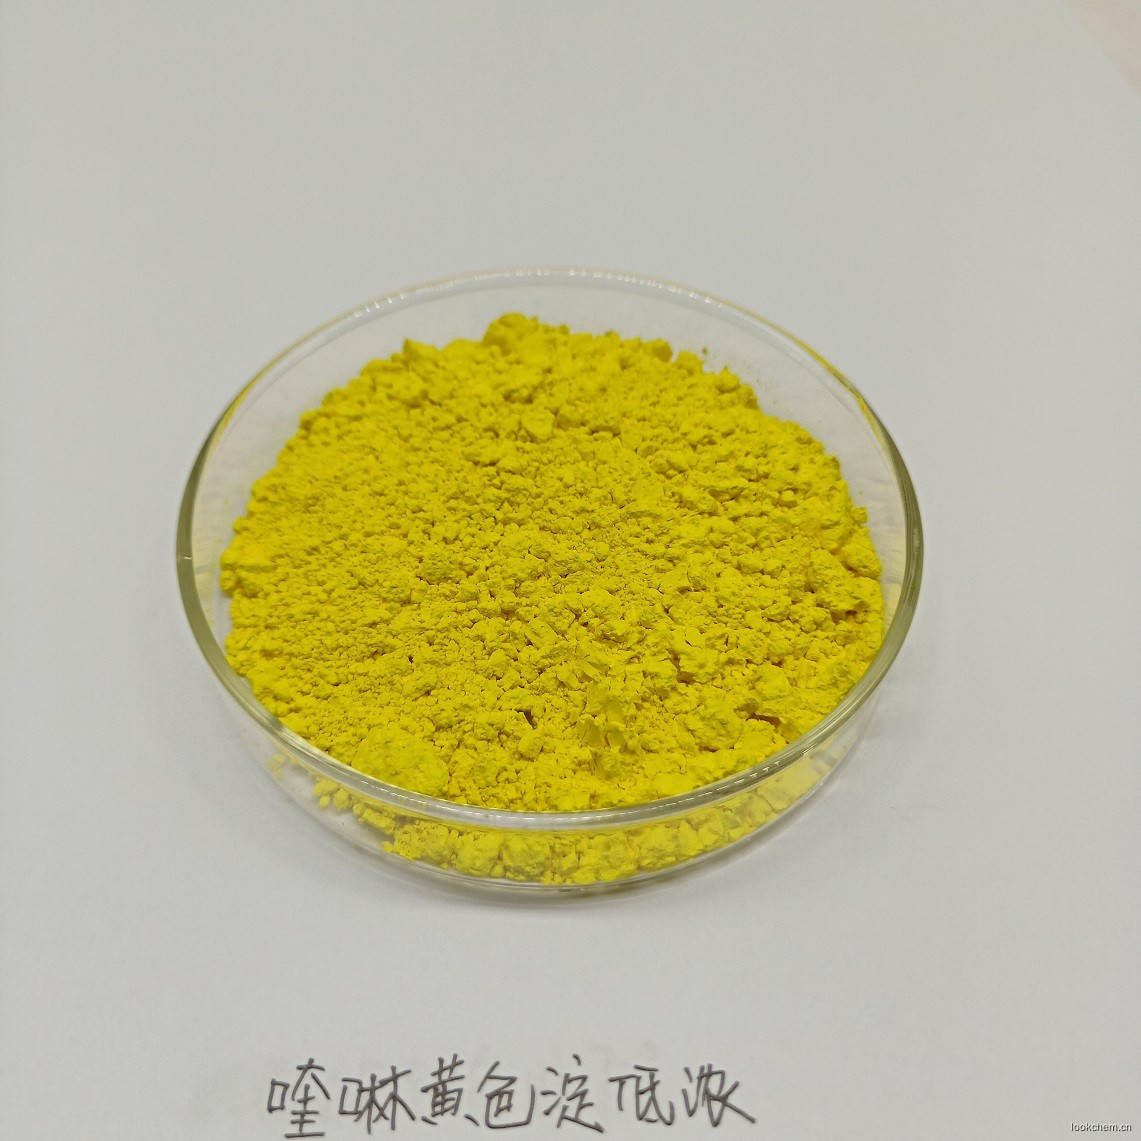 喹啉黄铝色淀 CI 47005:1 化妆品专用色淀 IDACOL 色素